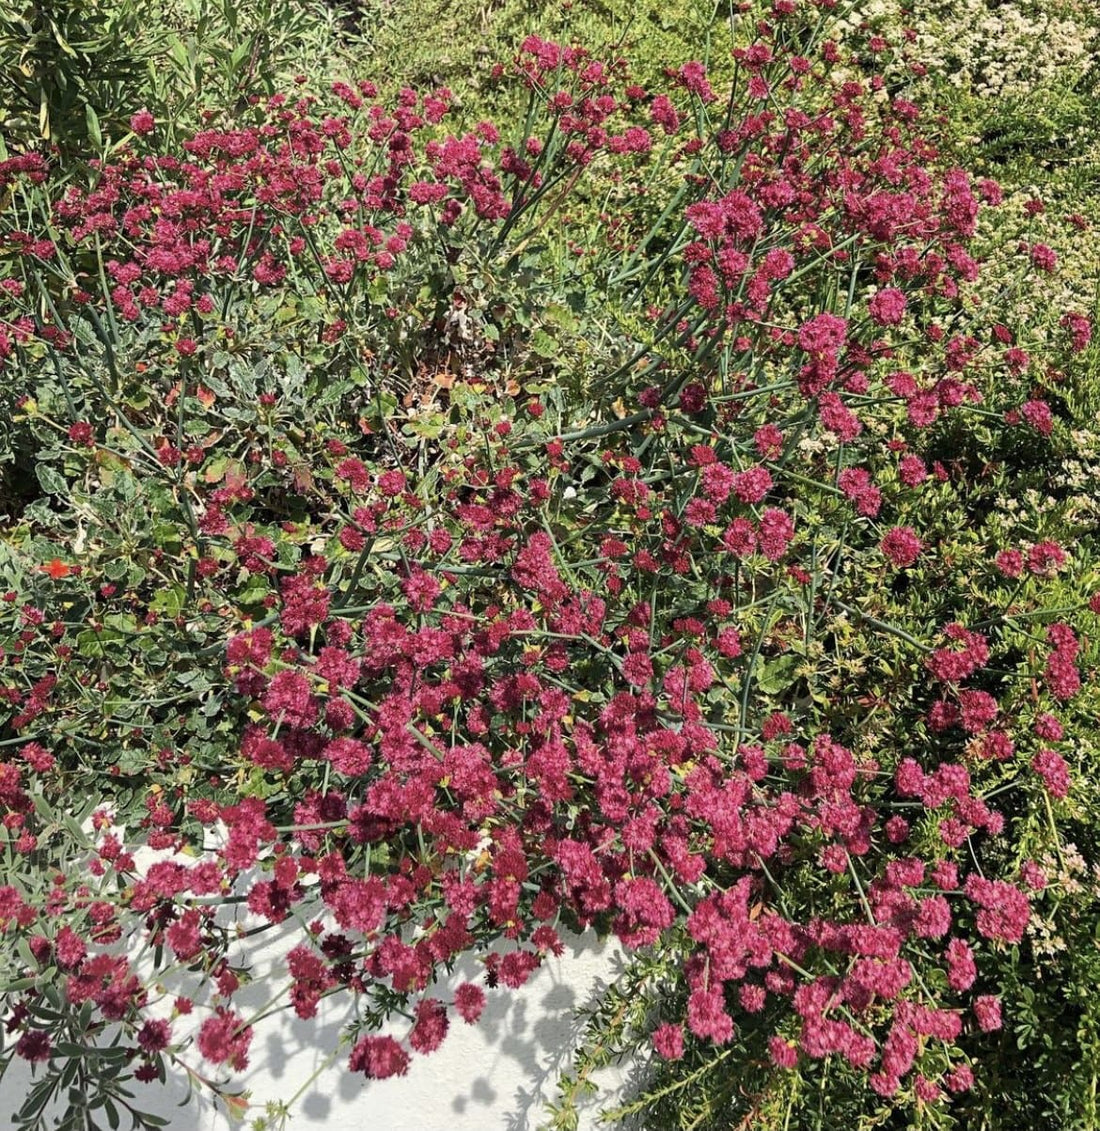 Eriogonum grande var. rubescens, Red Flowered Buckwheat flowering